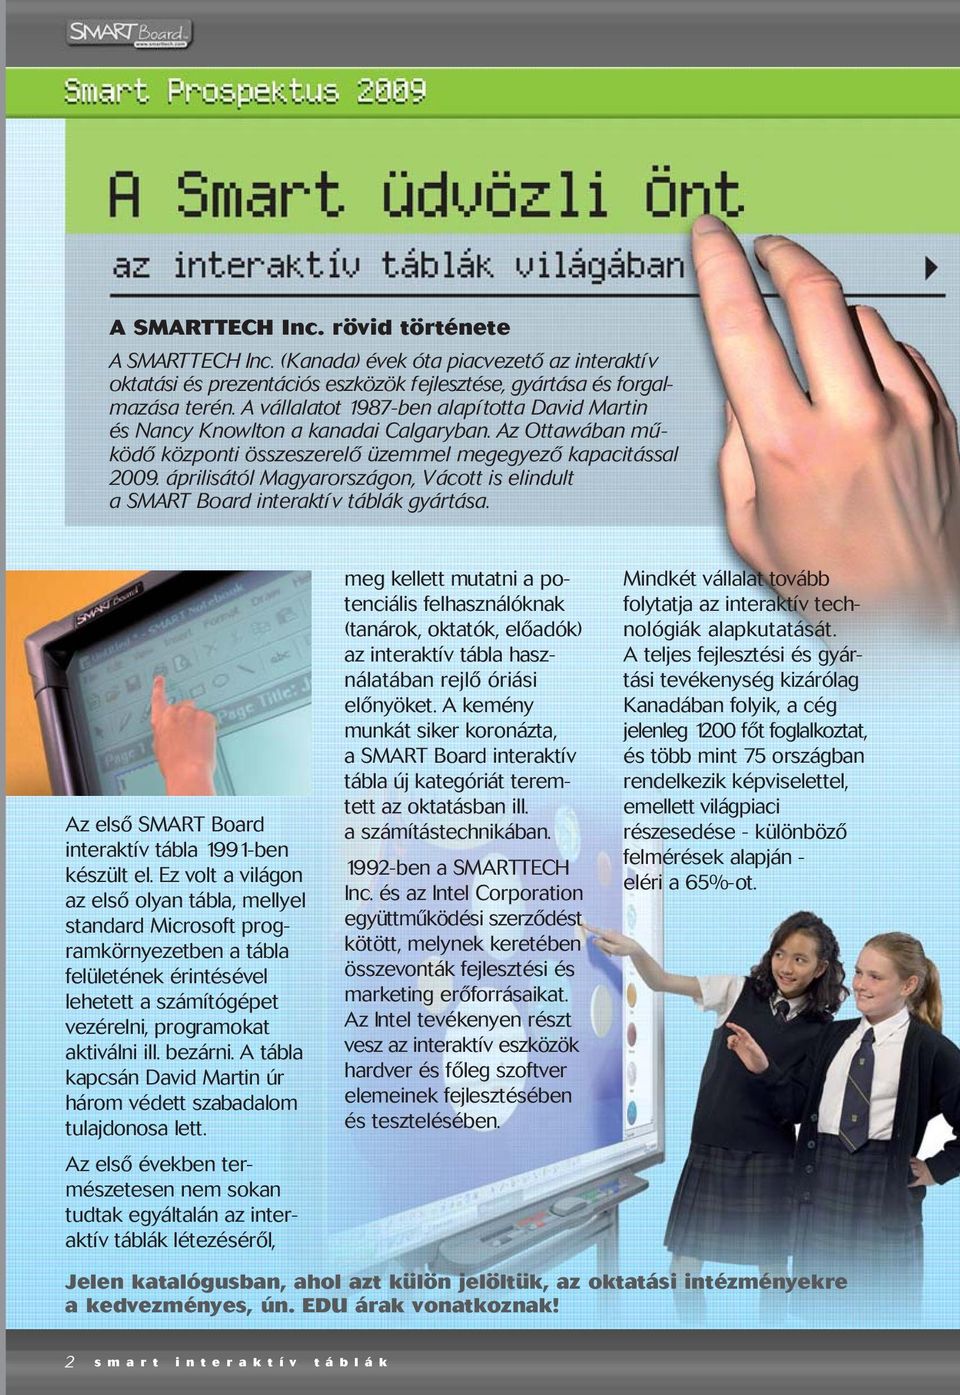 áprilisától Magyarországon, Vácott is elindult a SMART Board interaktív táblák gyártása. Az elsõ SMART Board interaktív tábla 1991-ben készült el.